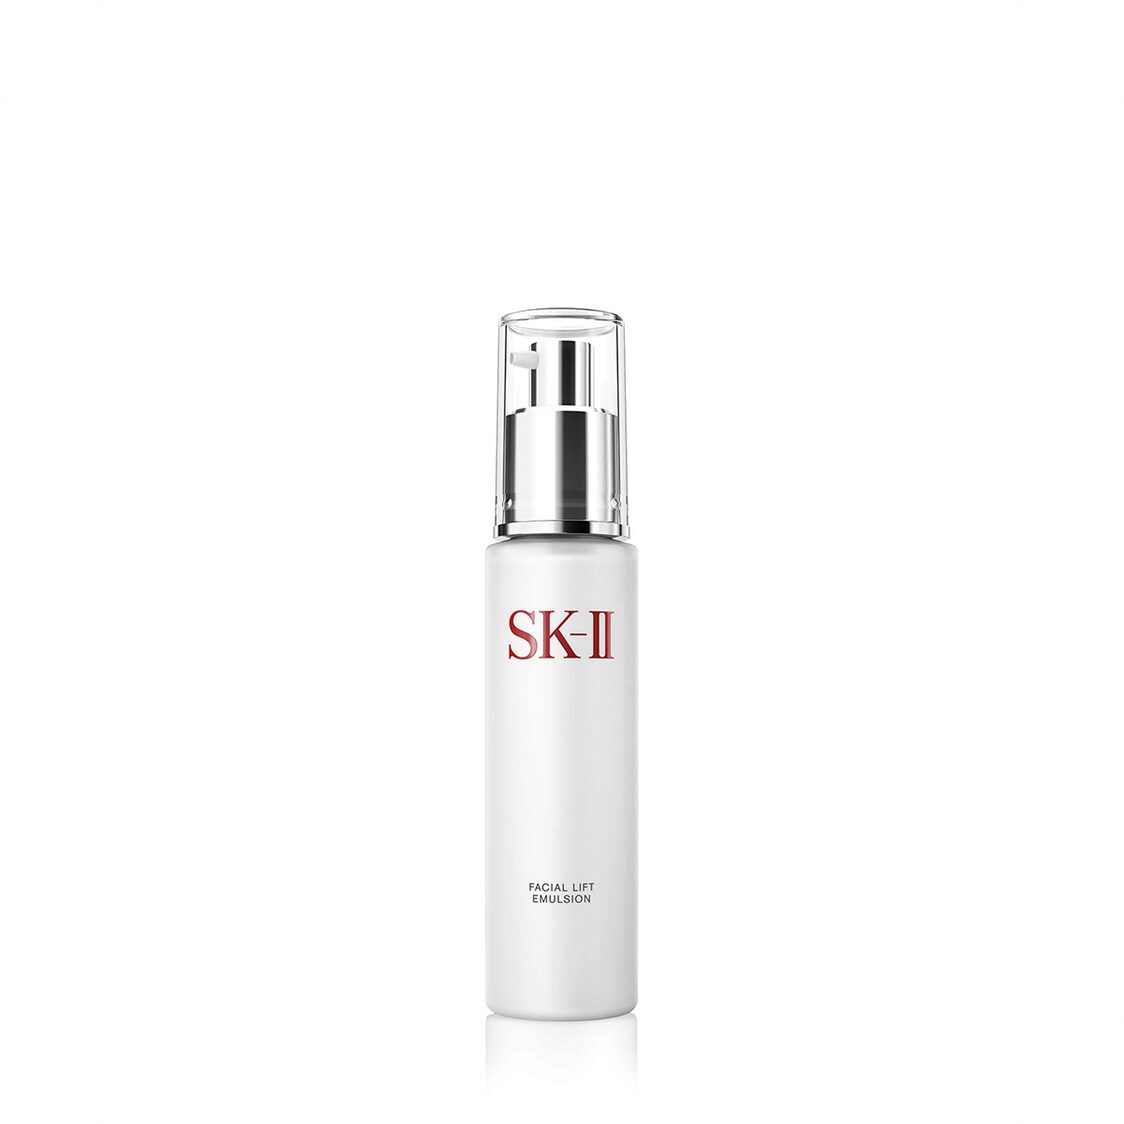 SK-II Facial Lift Emulsion 100g